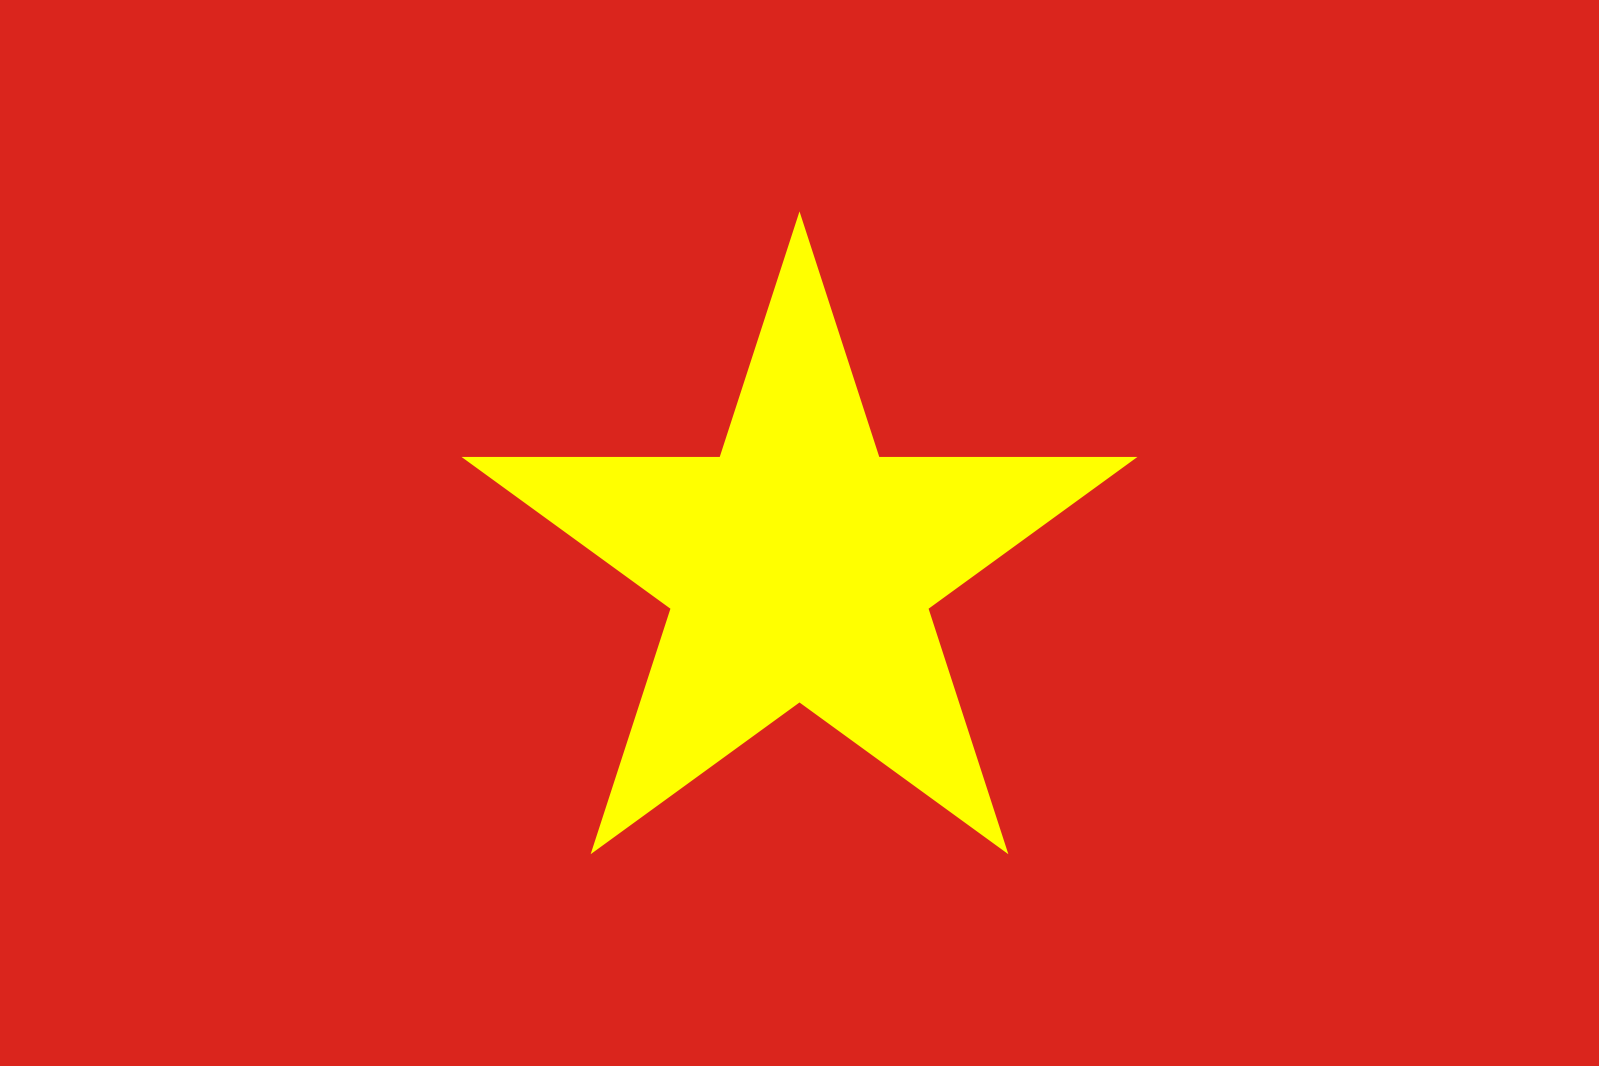 Быть твоей звездой вьетнам. НФОЮВ флаг. Флаг ветнан. Вьетнамский флаг. Флаг Вьетнама картинка.